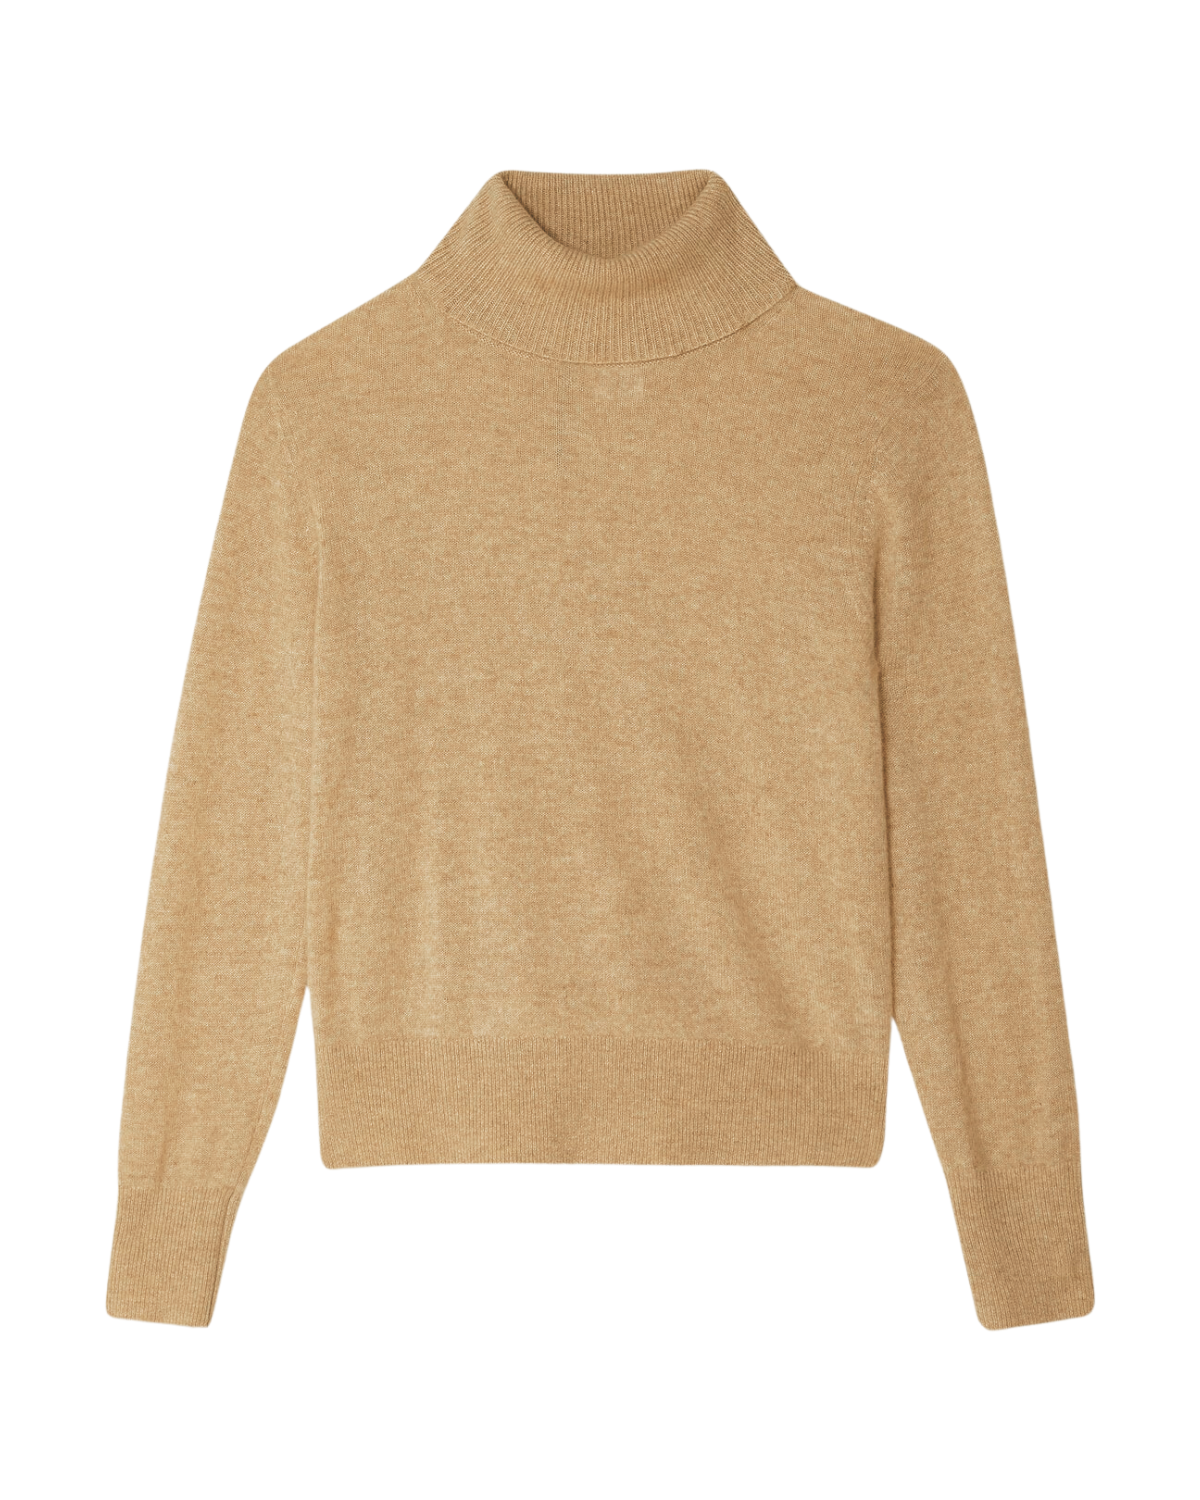 Cashmere Essential Turtleneck Sweater (Camel Heather)